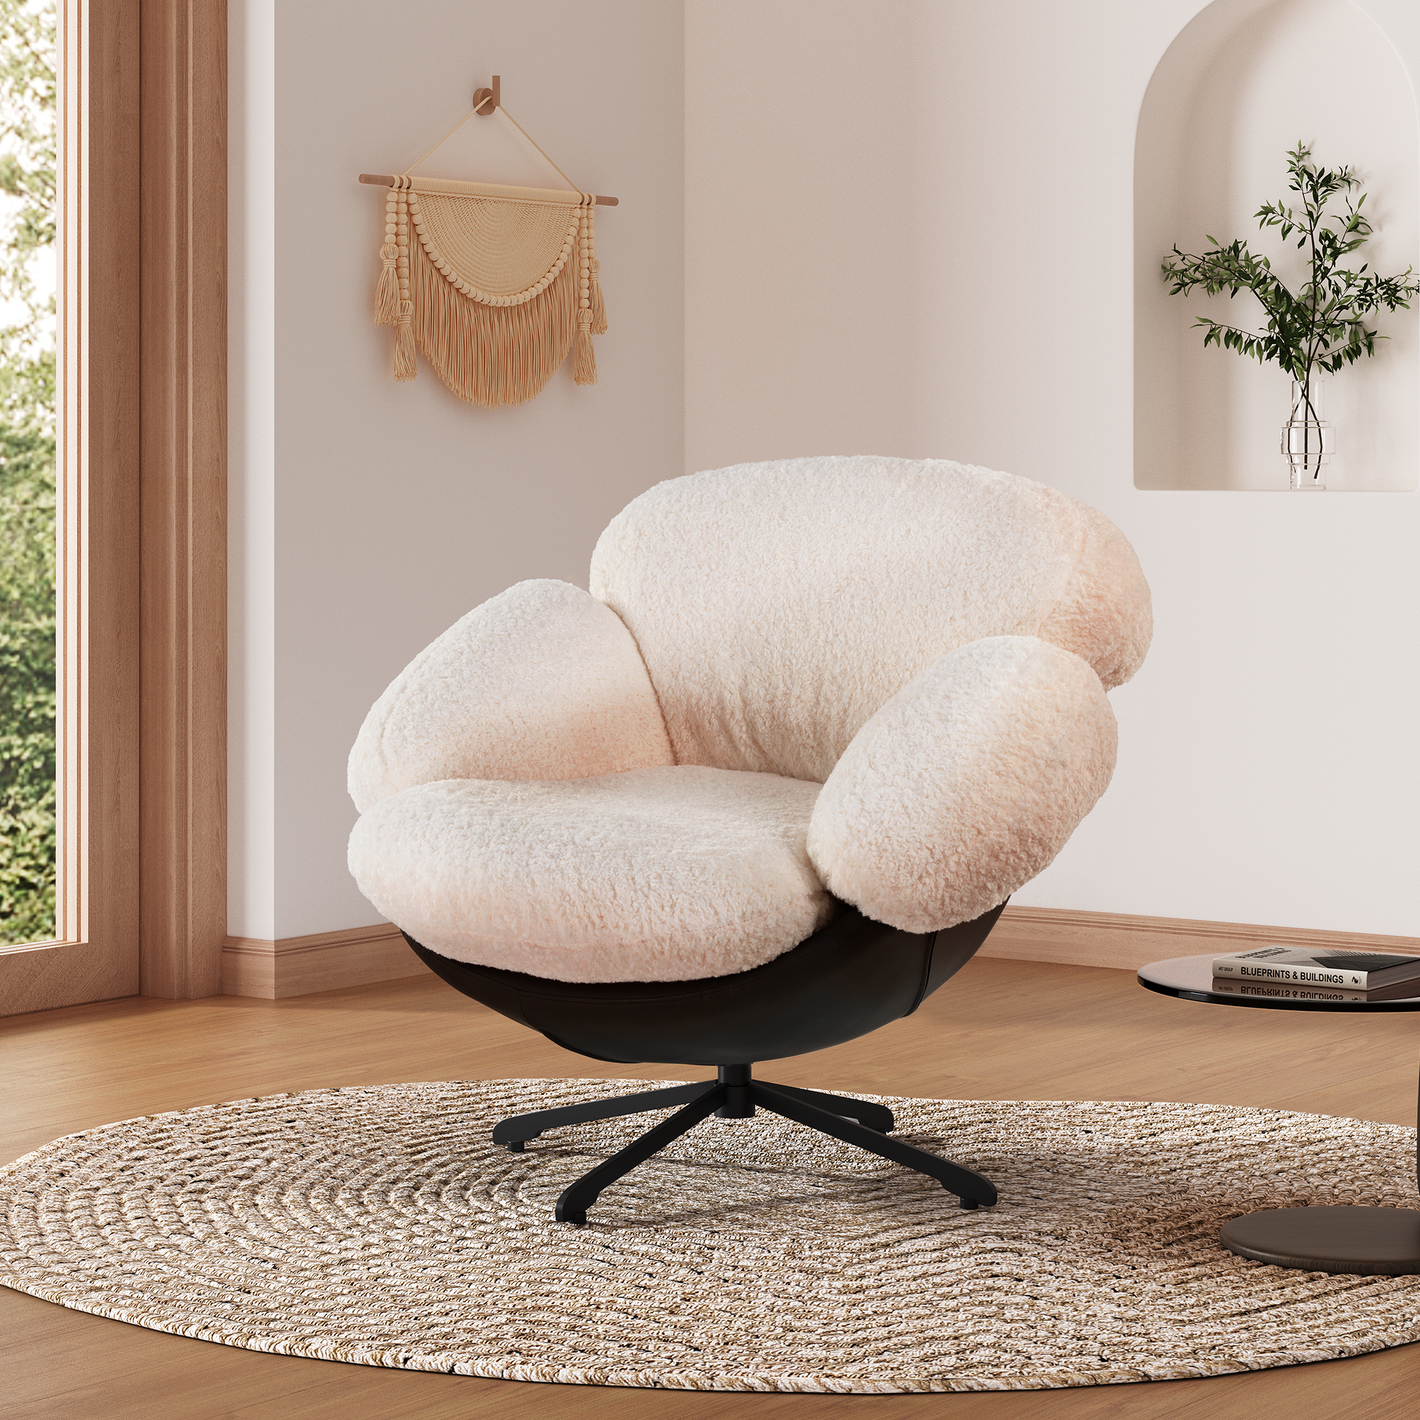 Cara, Modern Lounge Chair, White